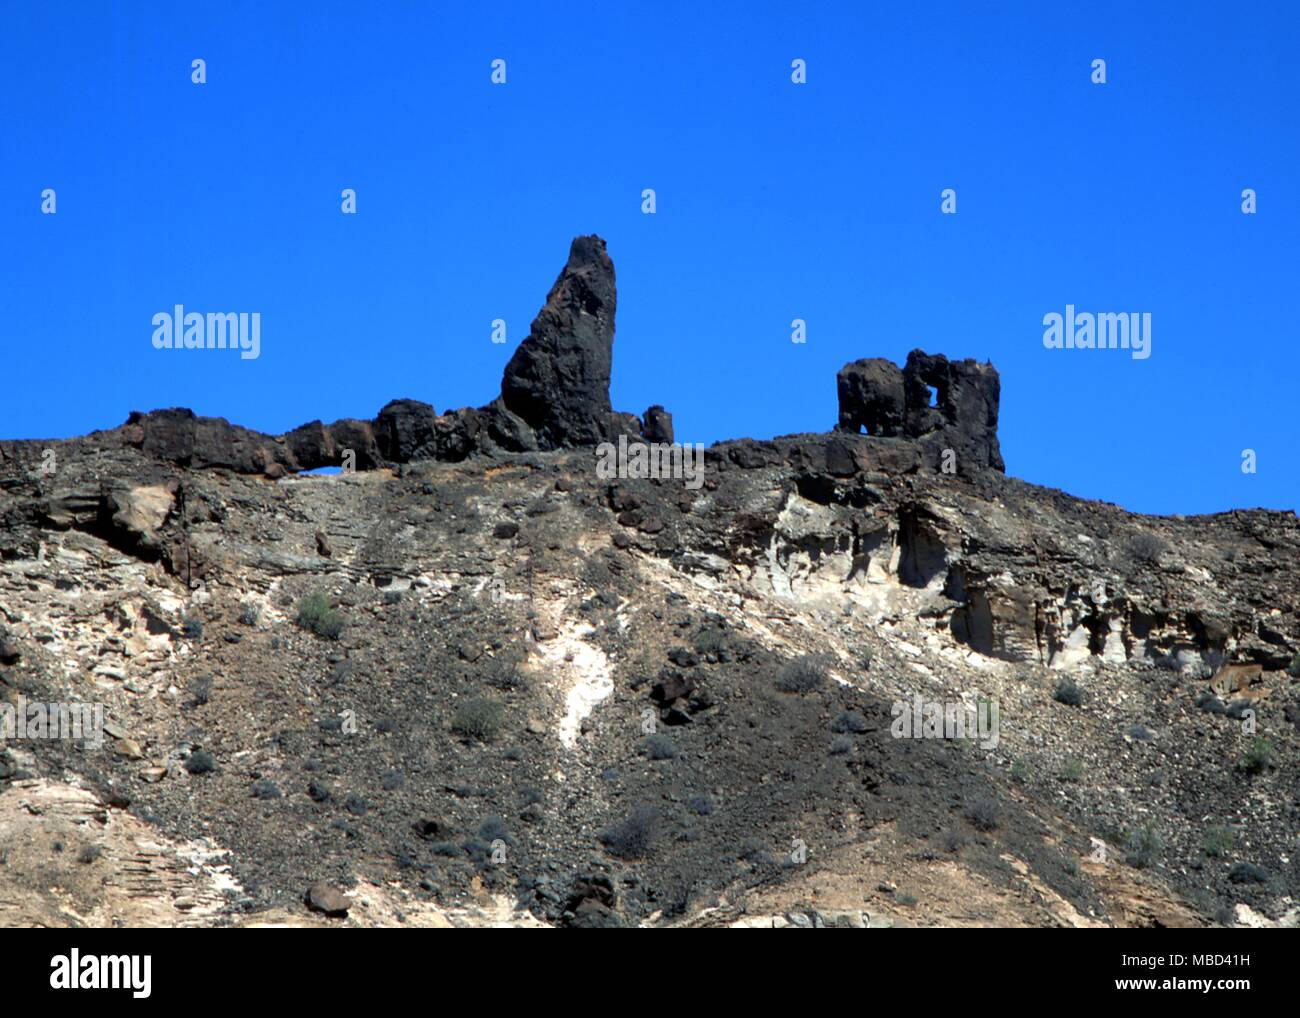 Die felsigen outcroppings des Gran Canaria auf den Kanarischen Inseln, der von einigen als die überreste des versunkenen Kontinent Atlantis geltend gemacht werden Stockfoto